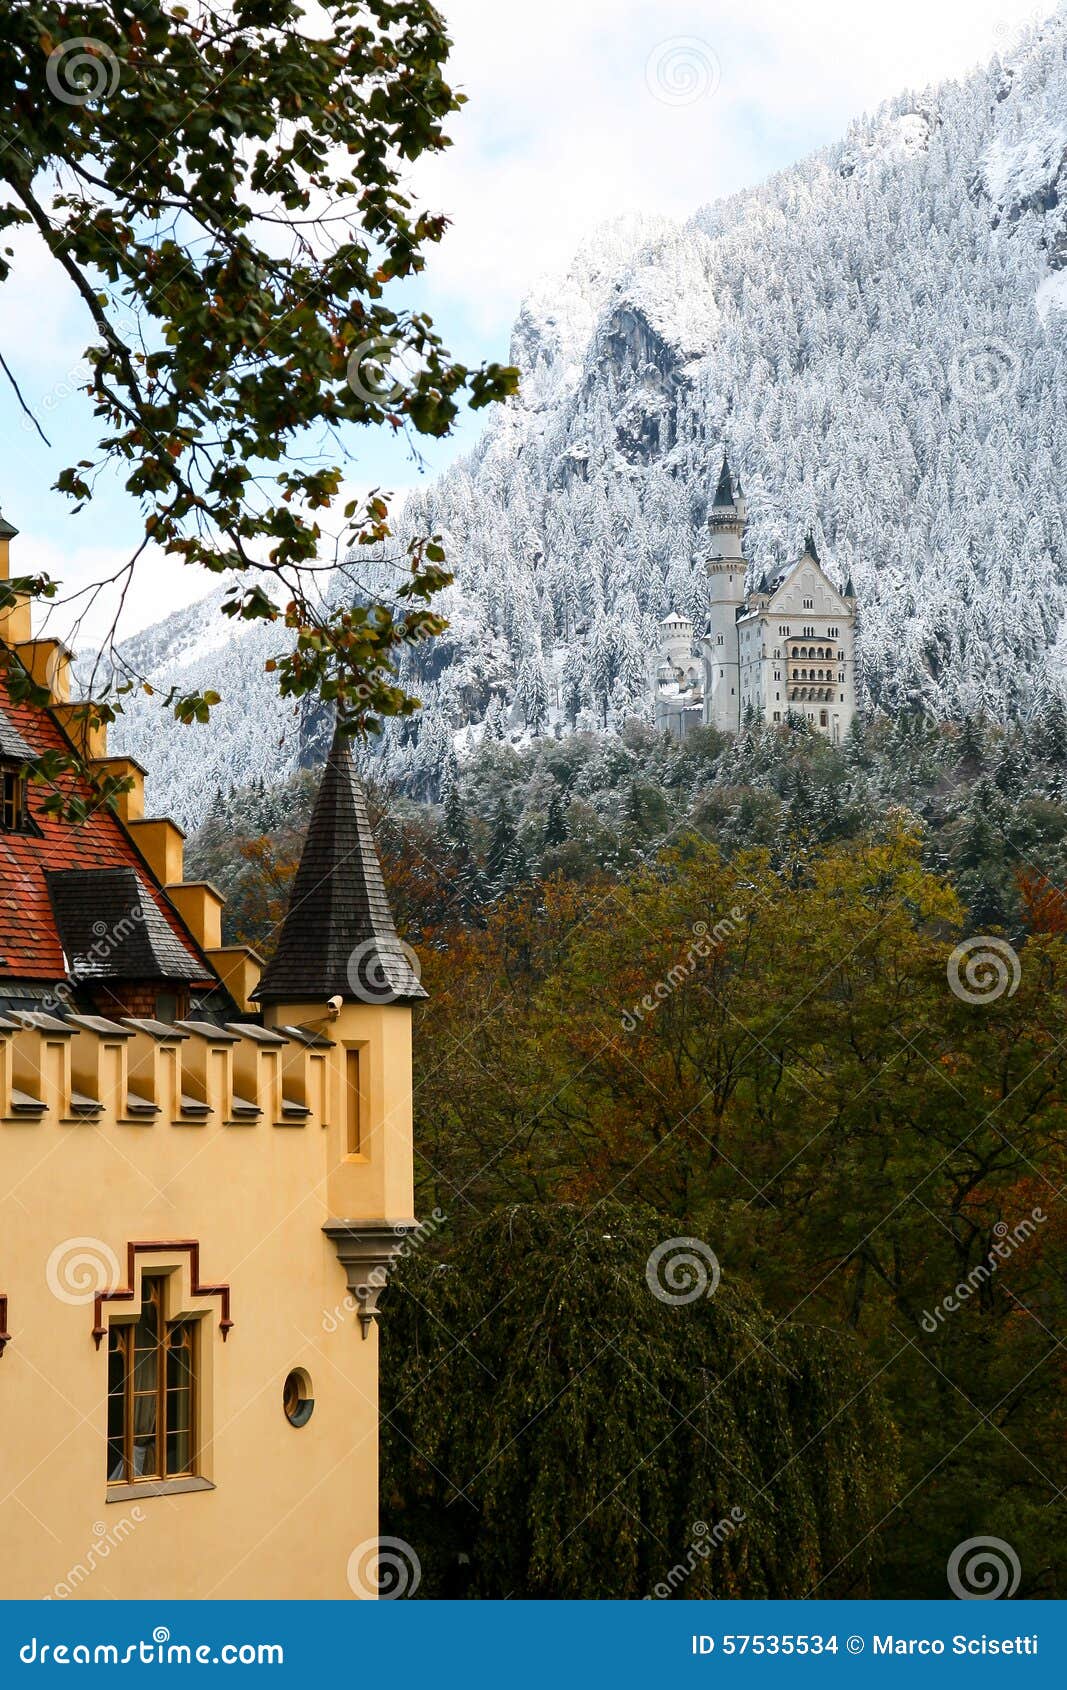 hohenschwangau castle in baviera, germany